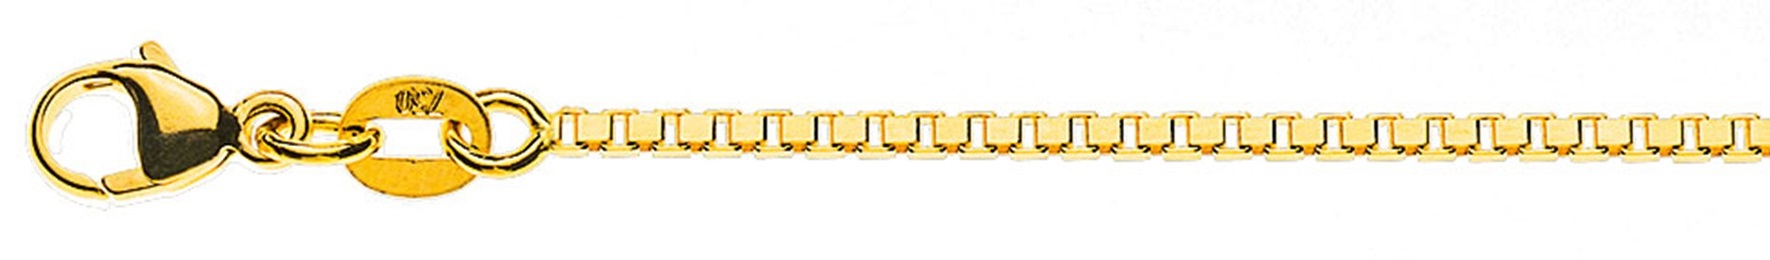 AURONOS Prestige Halskette Gelbgold 18K Venezianerkette diamantiert 55cm 1.4mm